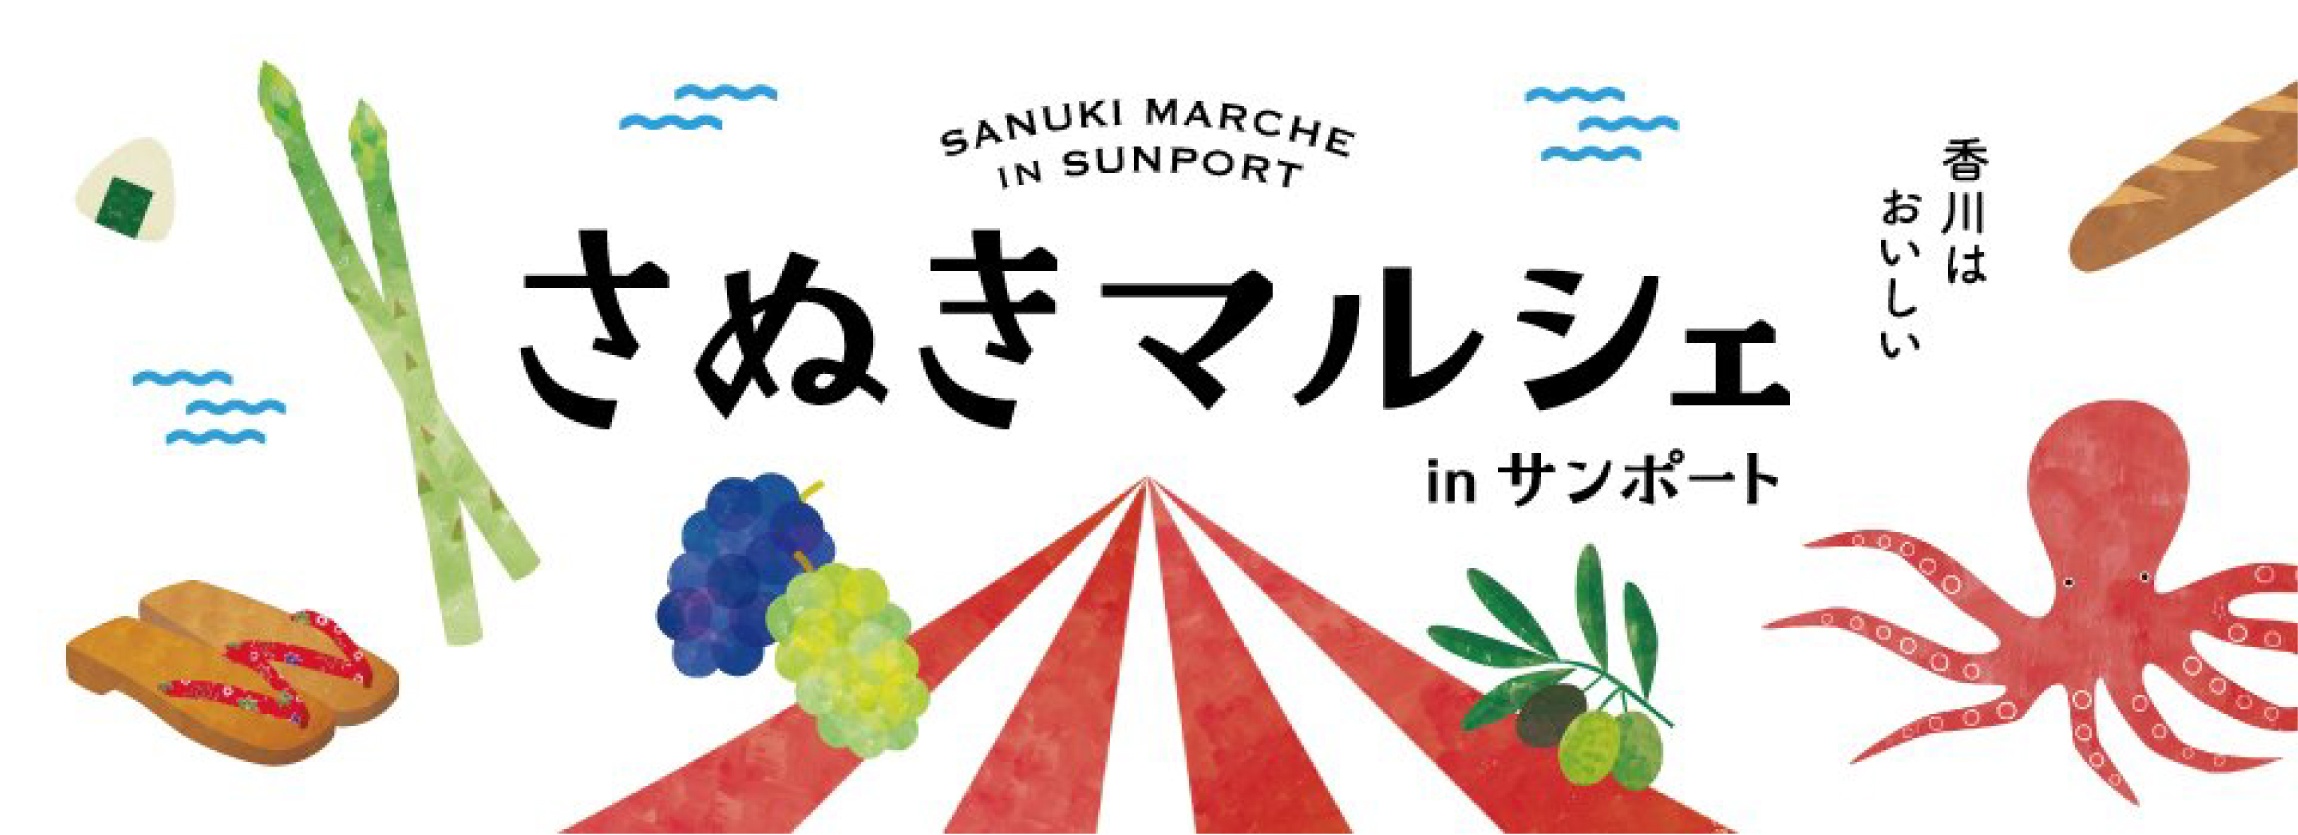 SUNPORT的SANUKI MARCHE 香川Sunport的Sanuki Marche很好吃